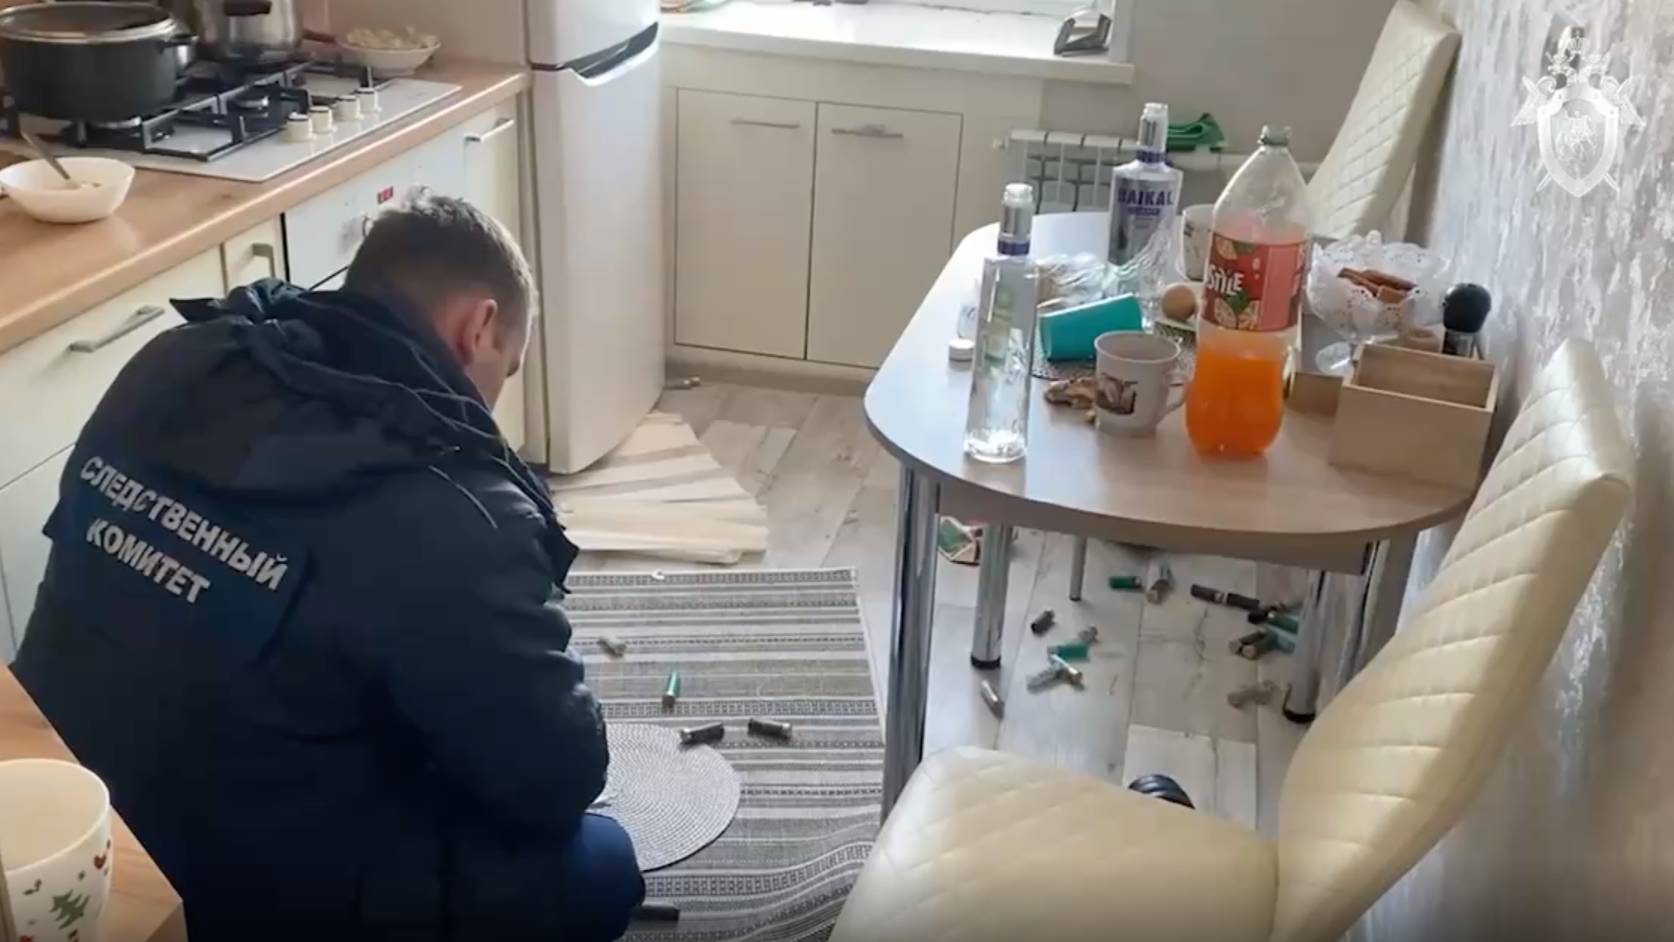 Гильзы на полу, водка на столе: Появилось видео из квартиры открывшего стрельбу жителя Кировской области